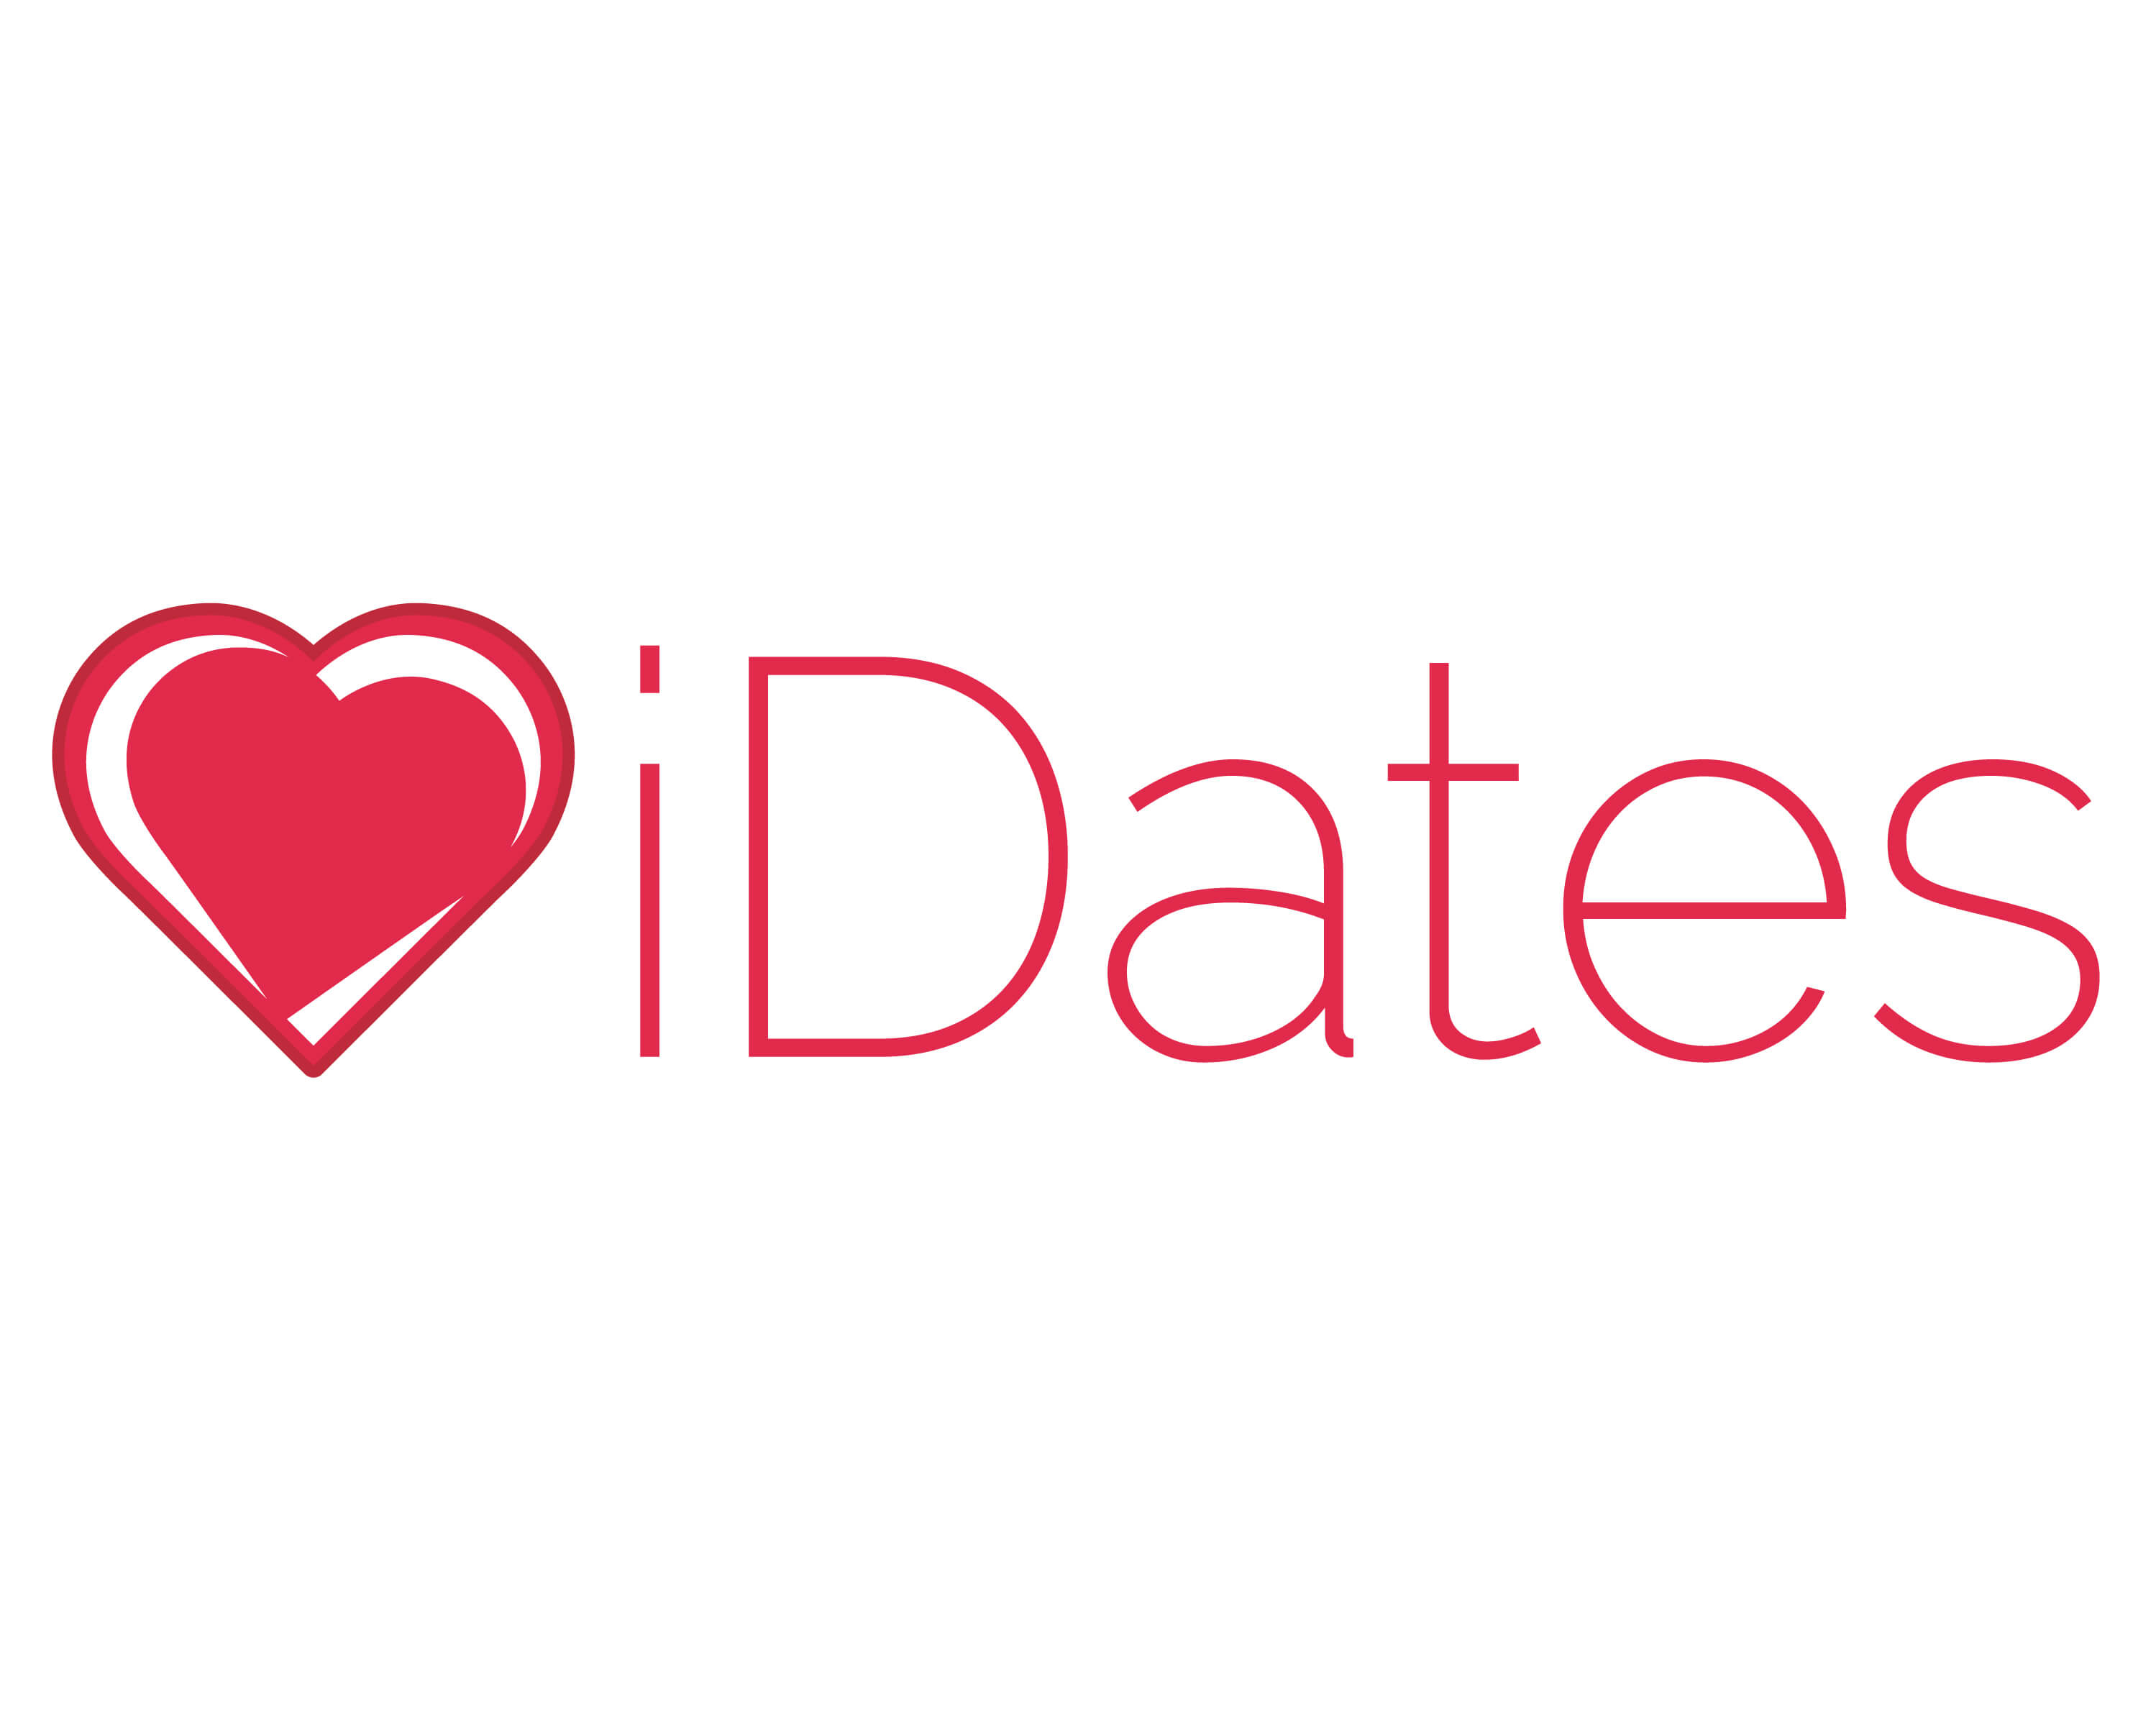 Best dating apps australia 2021